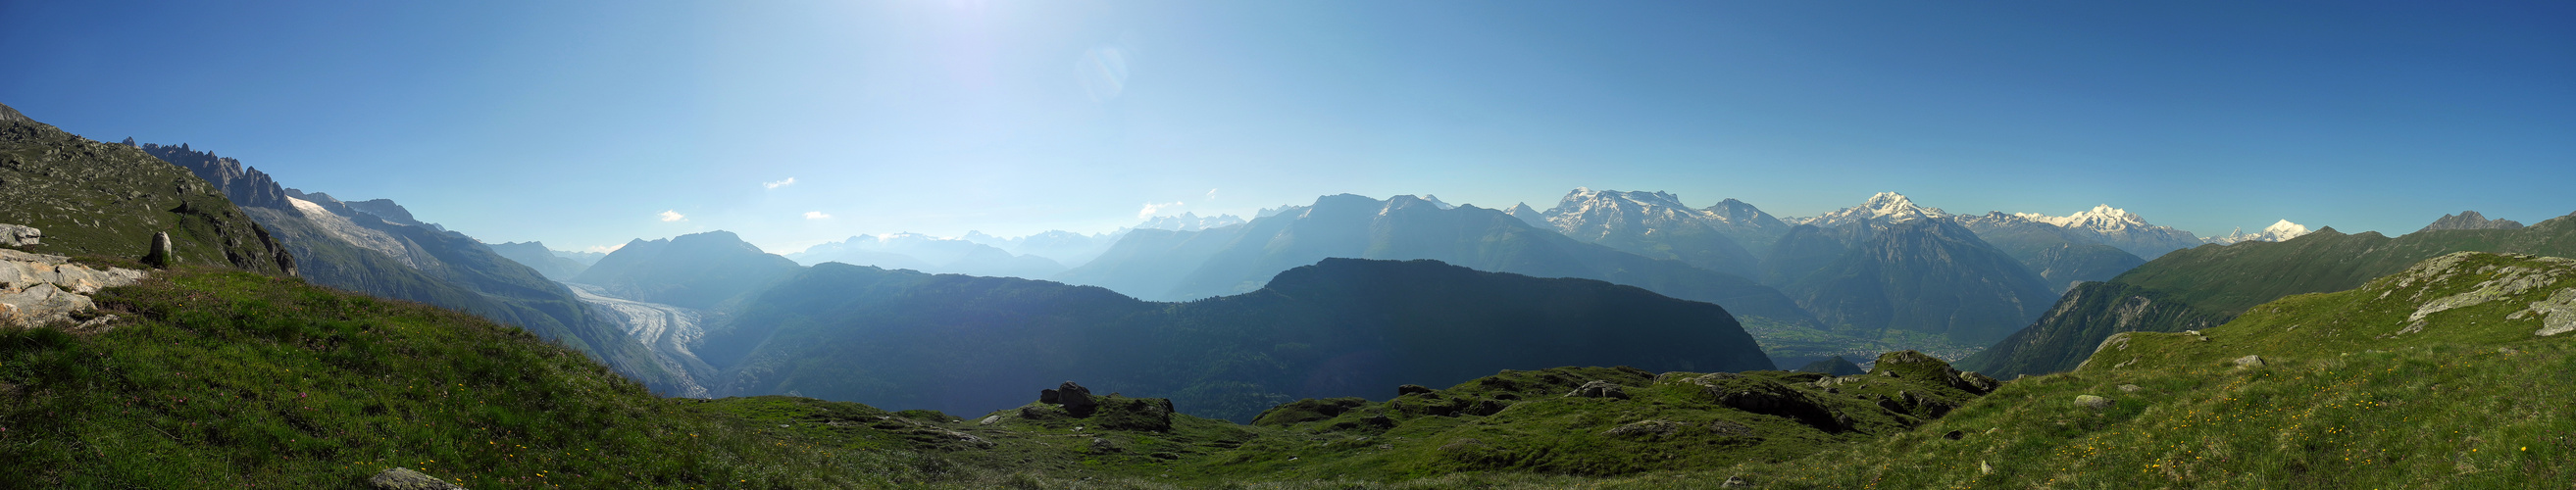 Panorama vom Aletschgletscher bis zum Matterhorn